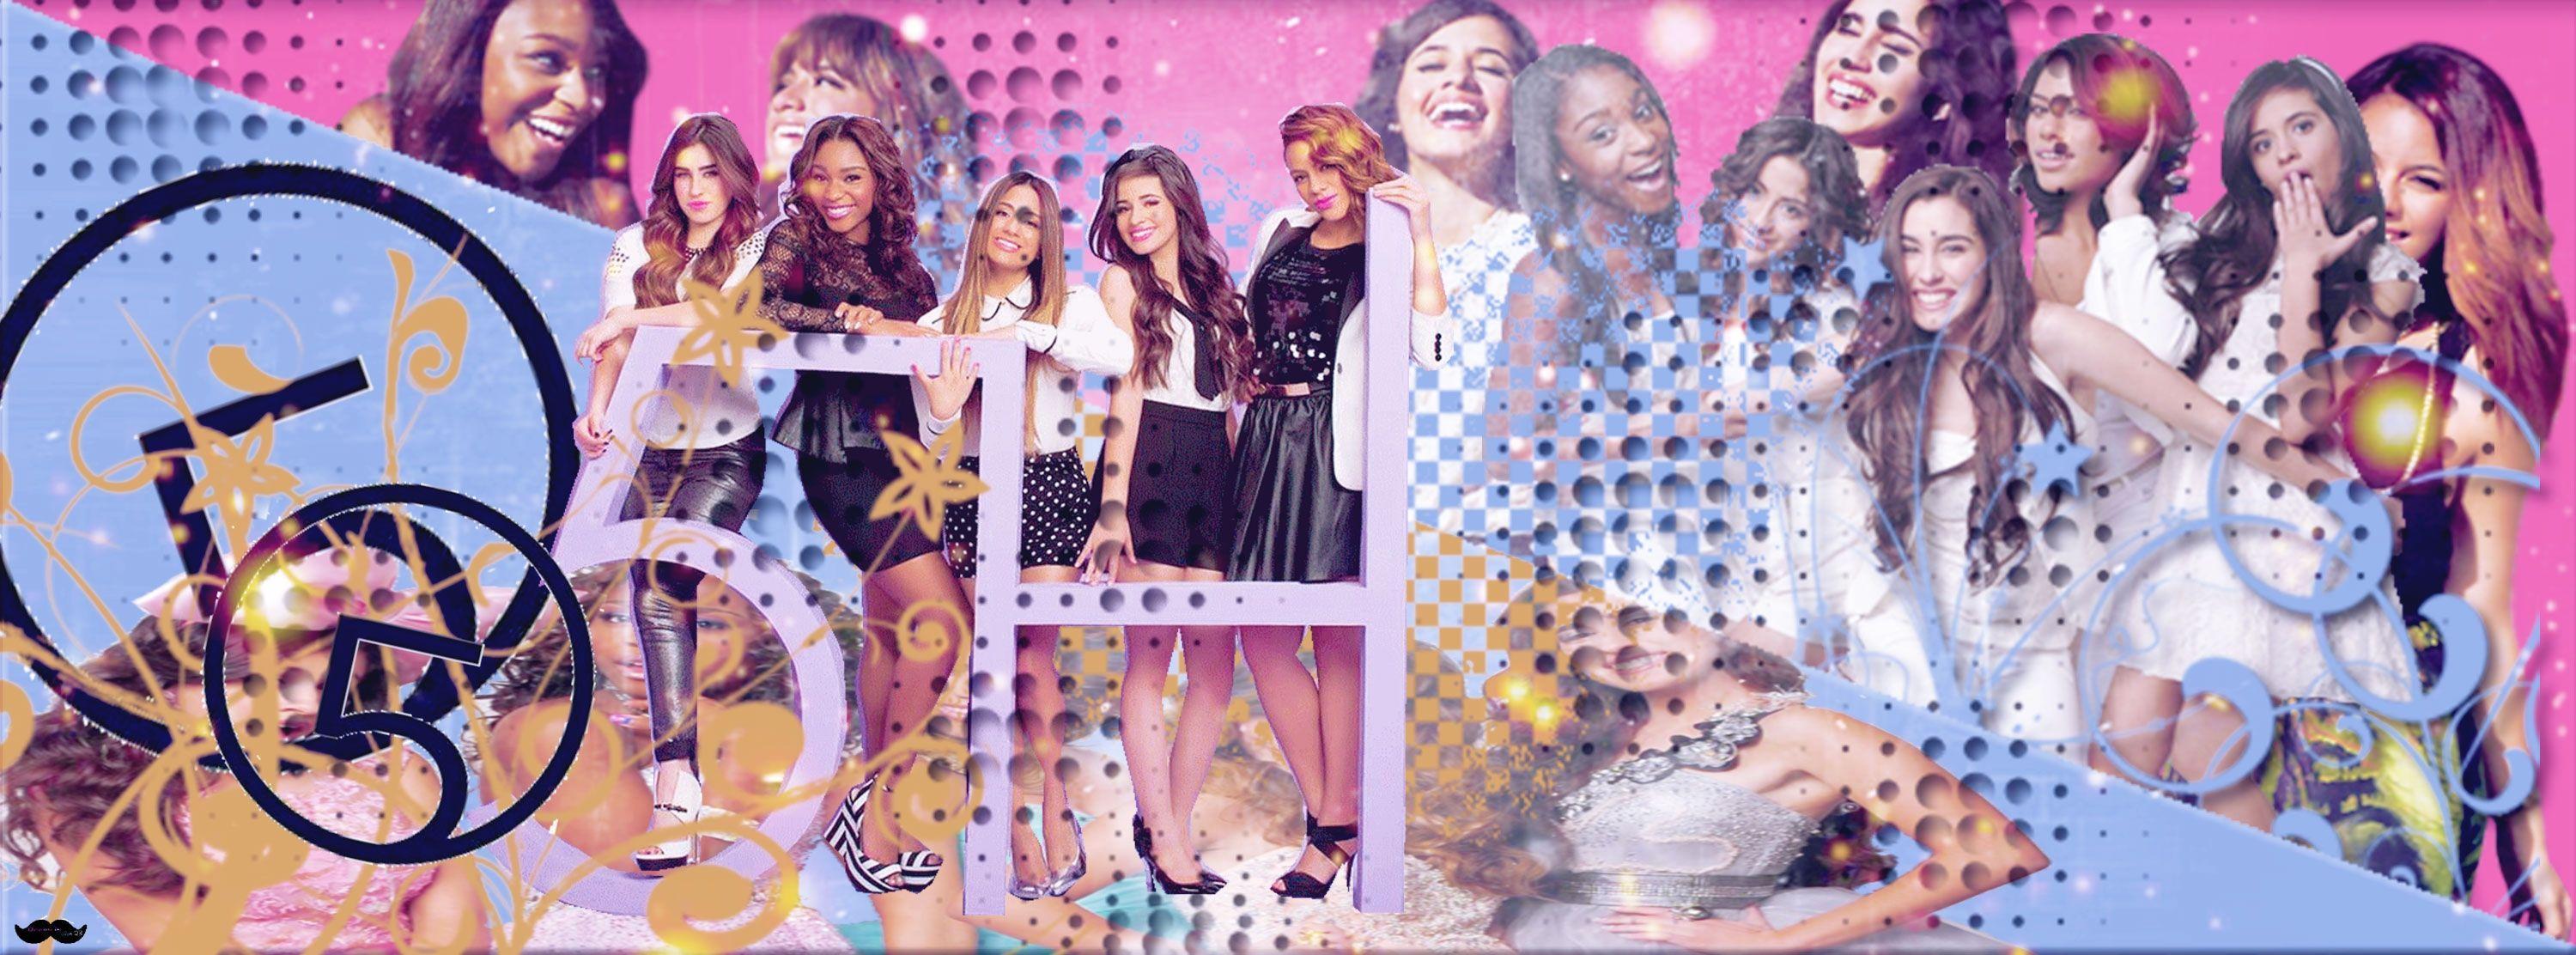 Fifth Harmony Wallpaper 62069